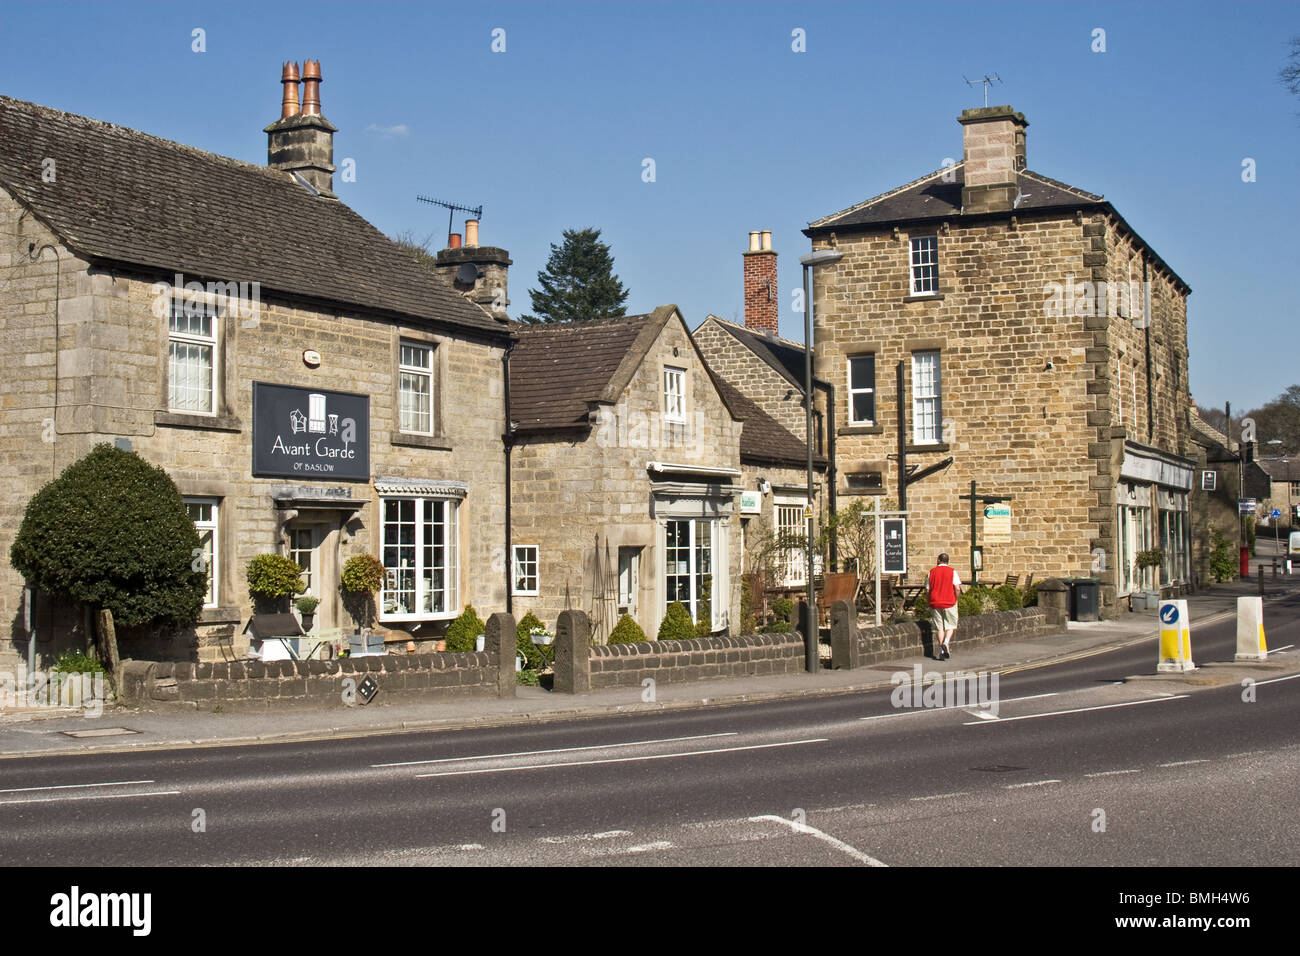 Negozi e bar in centro paese, Church Street, Baslow, Peak District, Derbyshire, England, Regno Unito Foto Stock